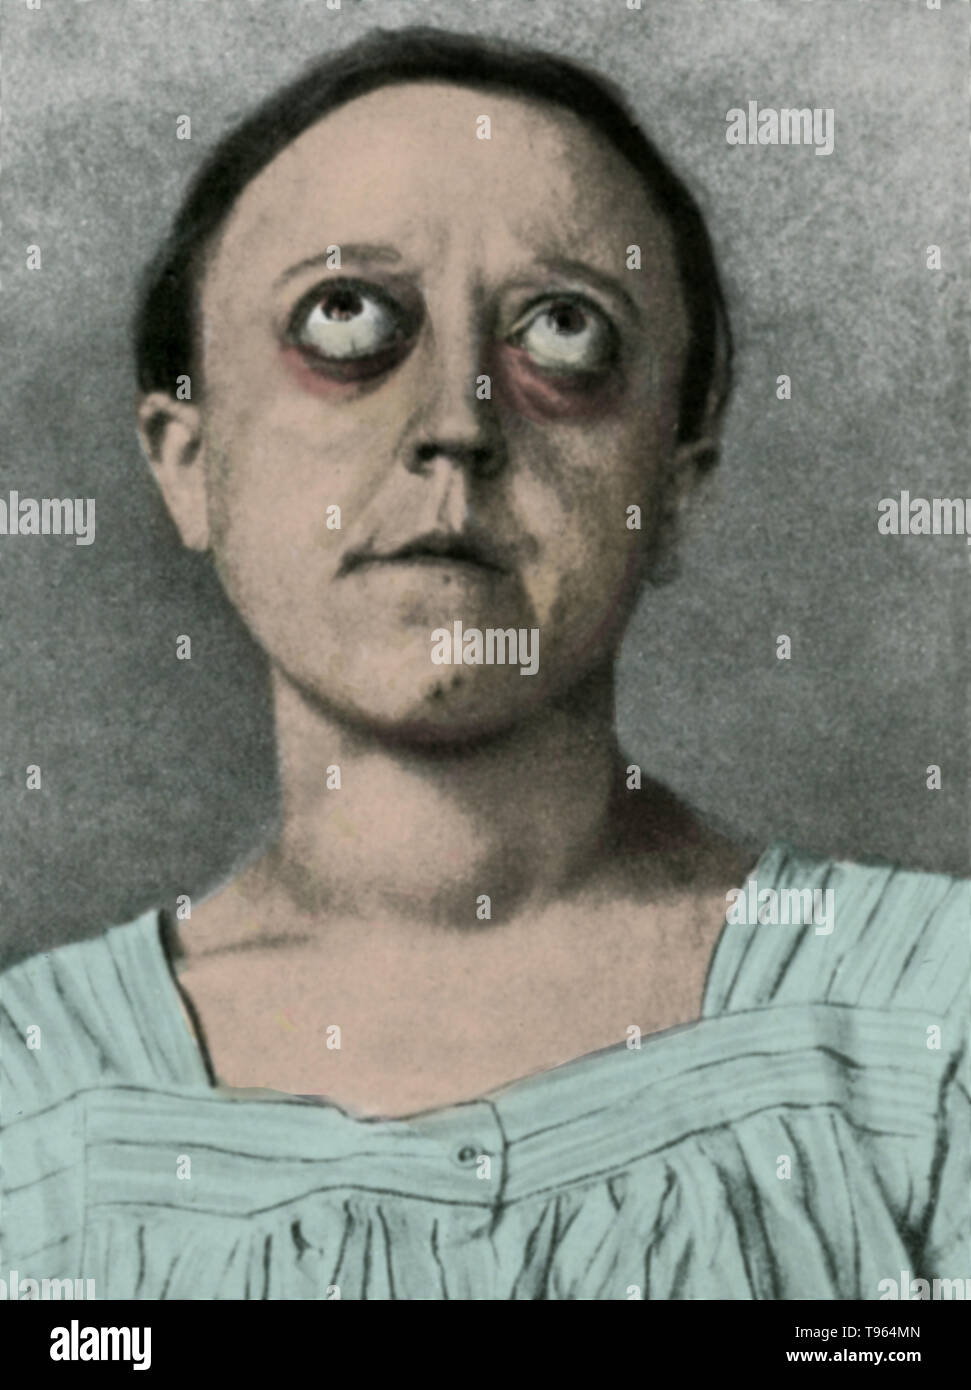 Una ilustración histórica de un paciente con oftalmopatía de Graves (también conocida como enfermedad de Graves-Basedow, fosas' asociado a la tiroides, o dysthyroid orbitopatía), un trastorno inflamatorio autoinmune que afectan a la órbita del ojo, con o sin trastorno de la tiroides. Foto de stock